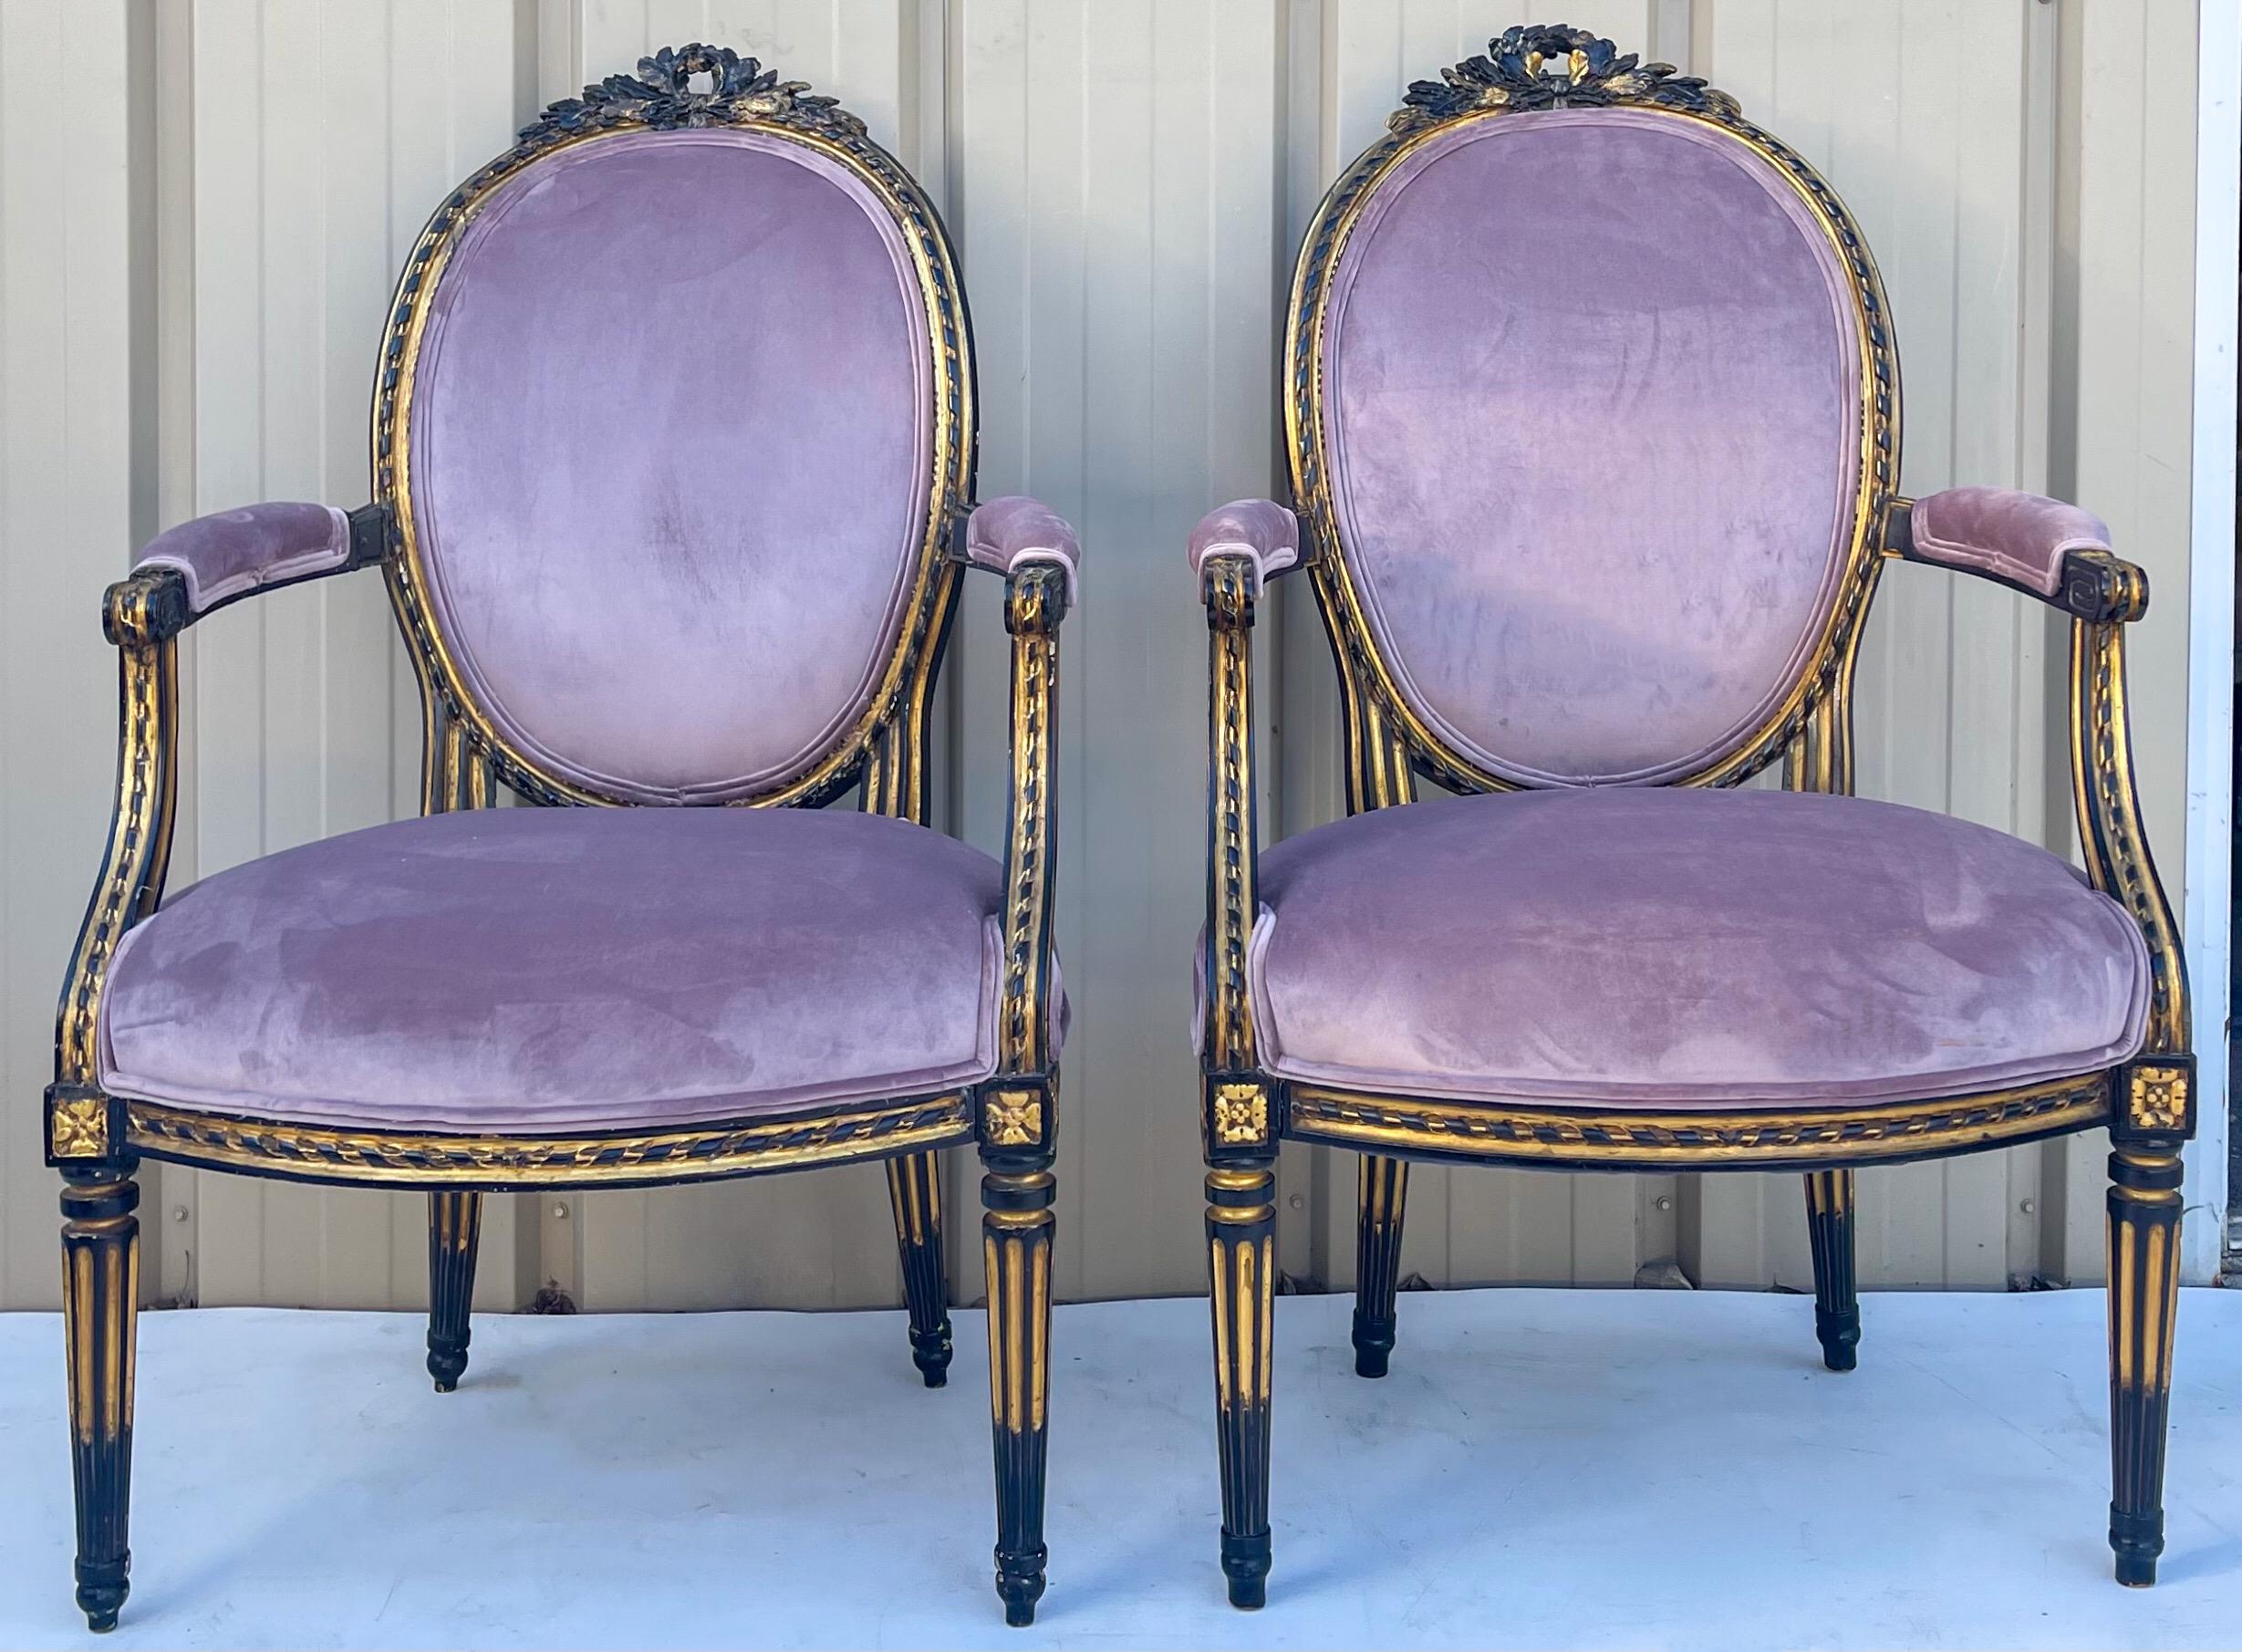 Dies ist ein Paar französischer ebonisierter und paketvergoldeter Bergère-Stühle aus dem späten 19. Sie haben den Stil von Louis XIV. Der lavendelfarbene Samtbezug ist eine Neuanschaffung. Die ebonisierten und vergoldeten Rahmen sind sehr schön